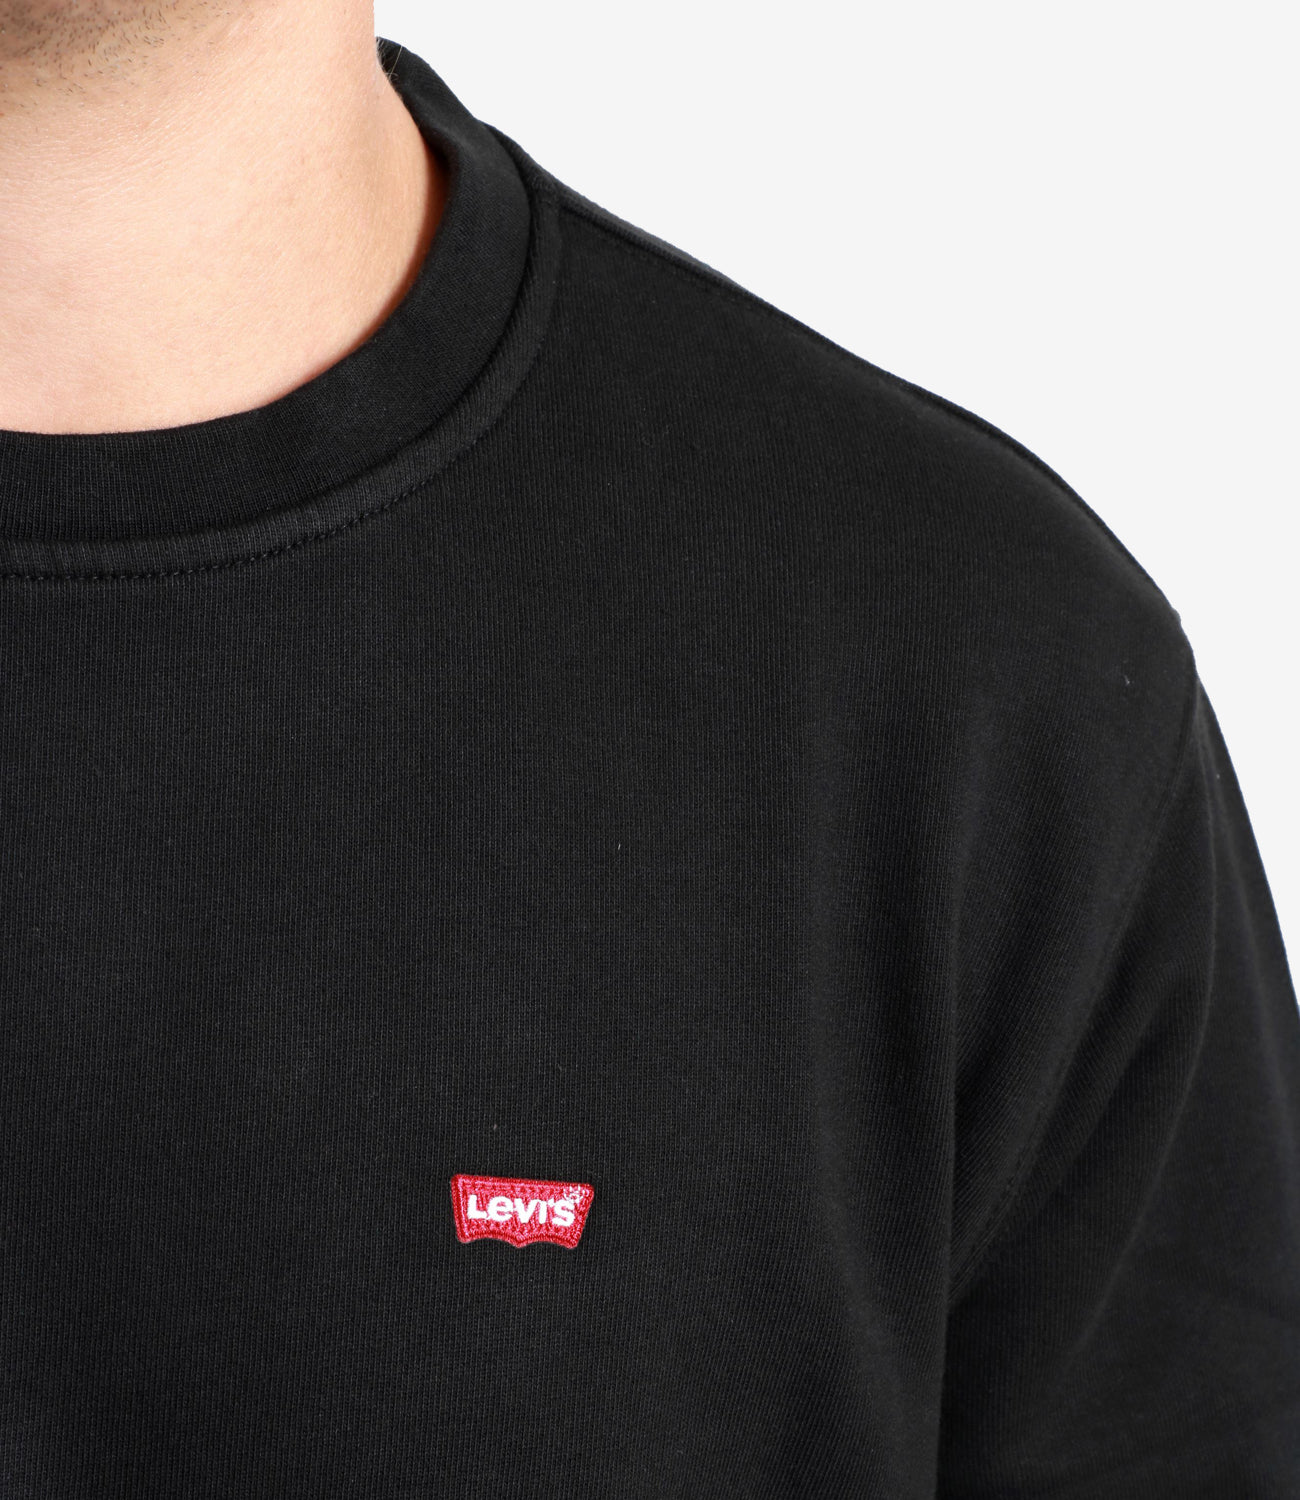 Levis | Sweatshirt New Original Crew Black